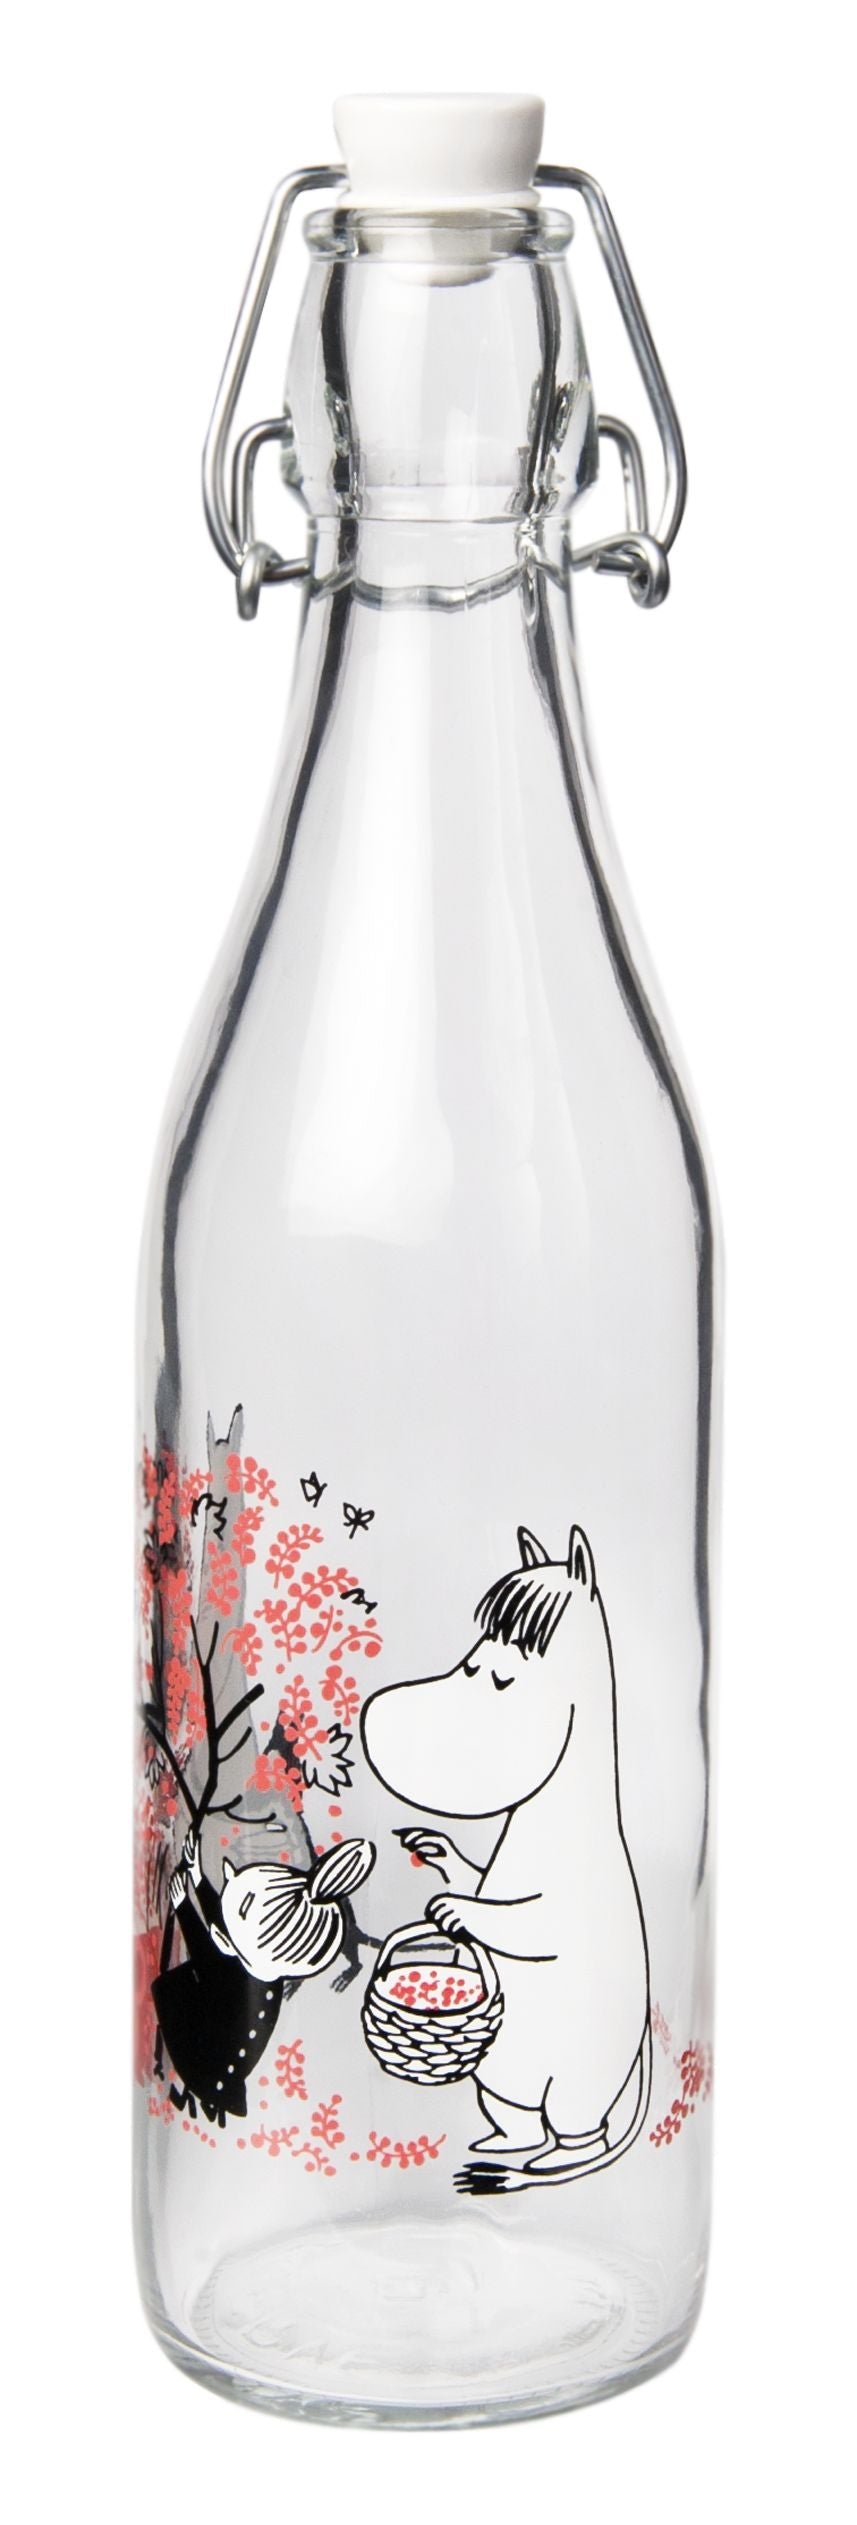 Muurla Moomin glasflaske, bær